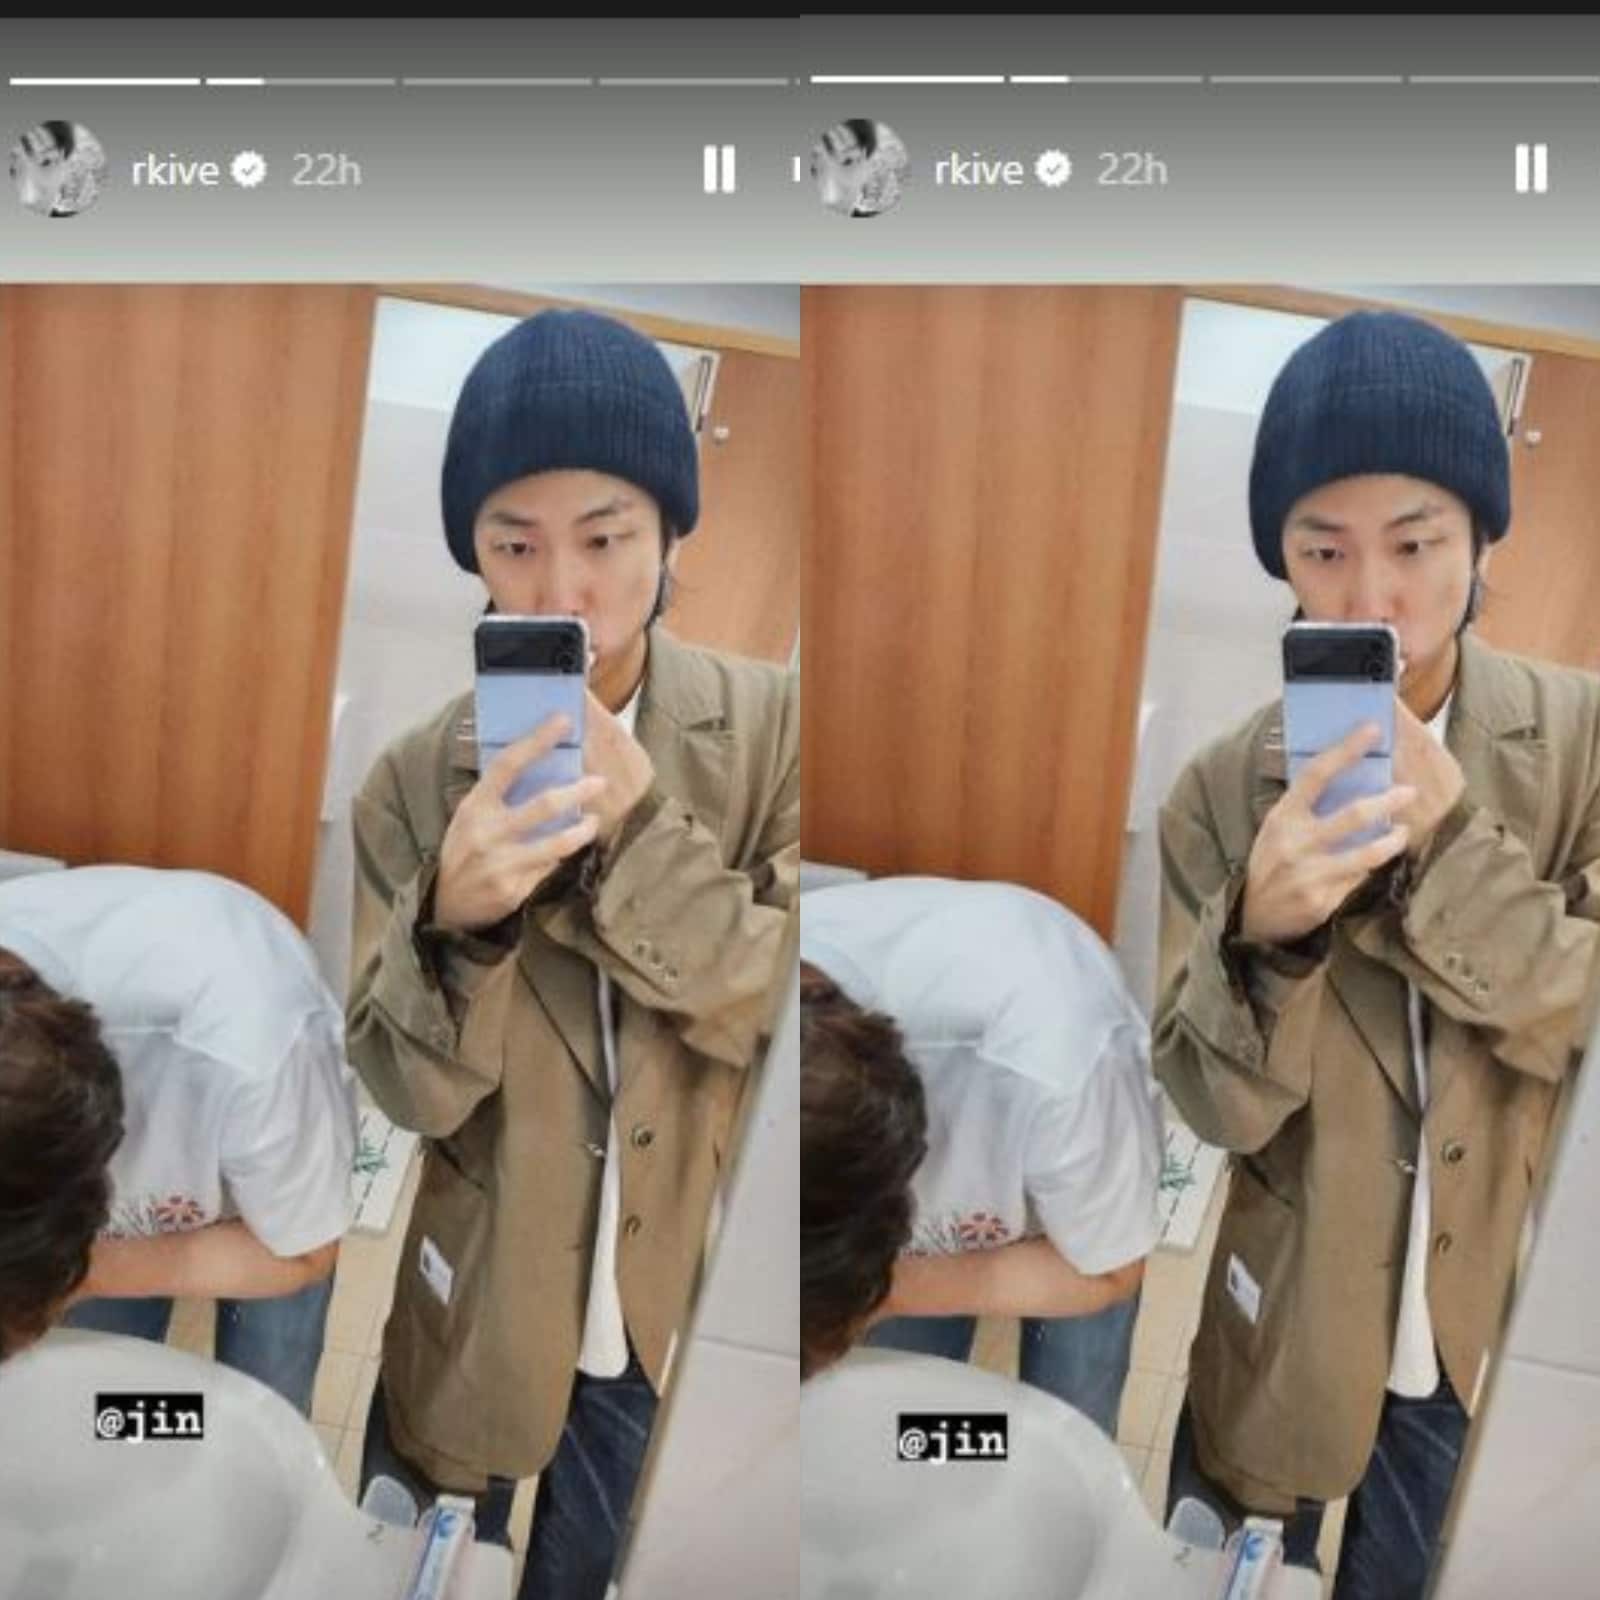 RM. Mirror selfies